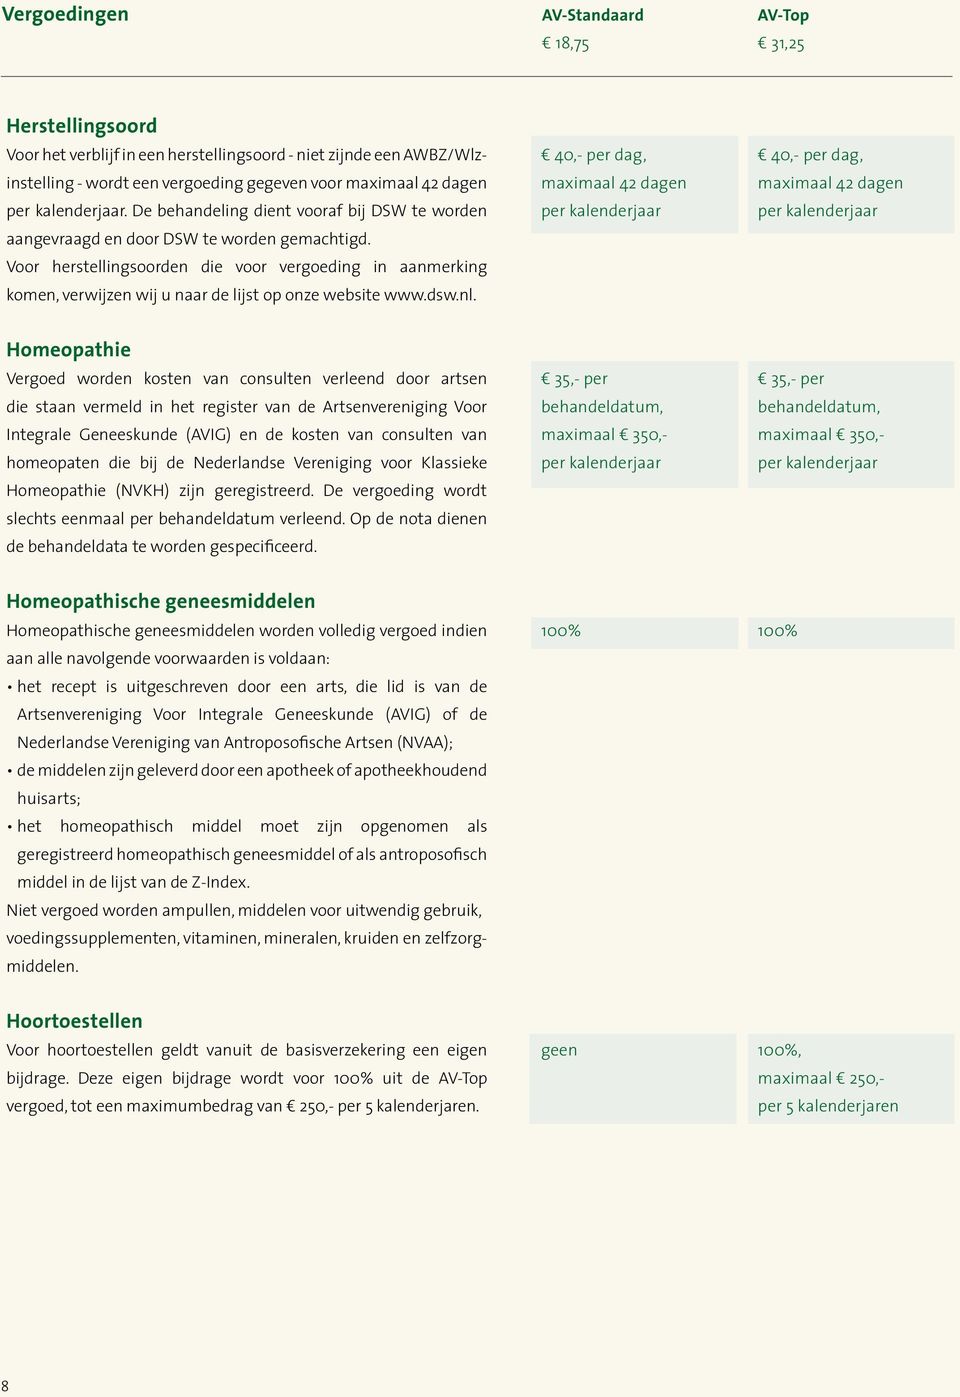 Voor herstellingsoorden die voor vergoeding in aanmerking komen, verwijzen wij u naar de lijst op onze website www.dsw.nl.